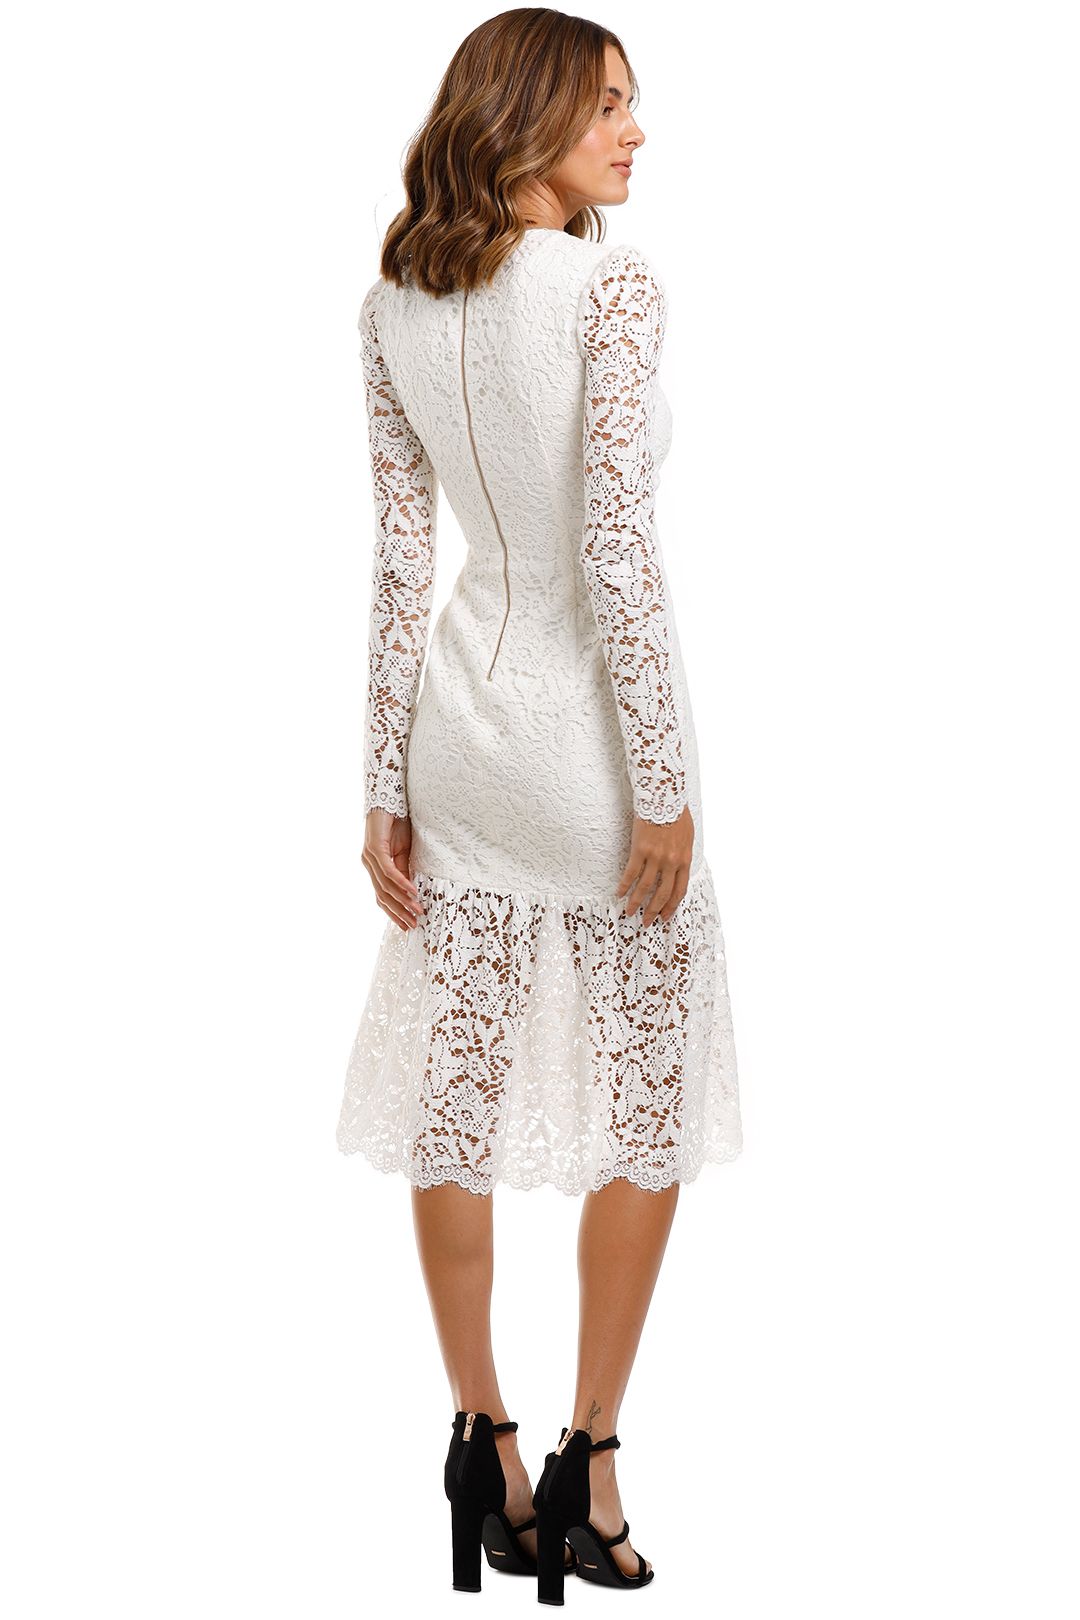 Rebecca Vallance Le Saint Ruched Dress White Midi